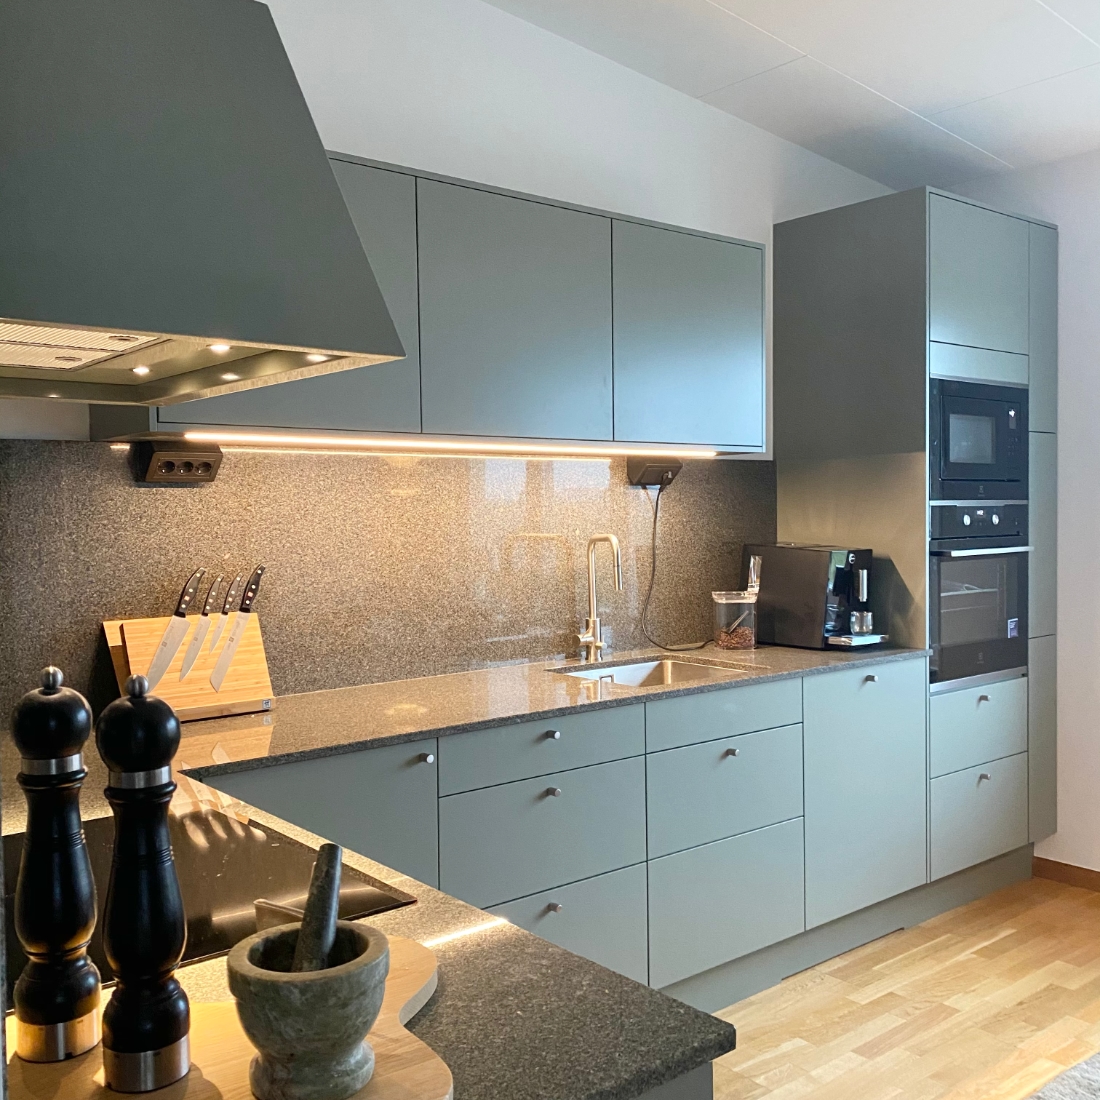 Helt nytt renoverat kök i Uppsala med grön design